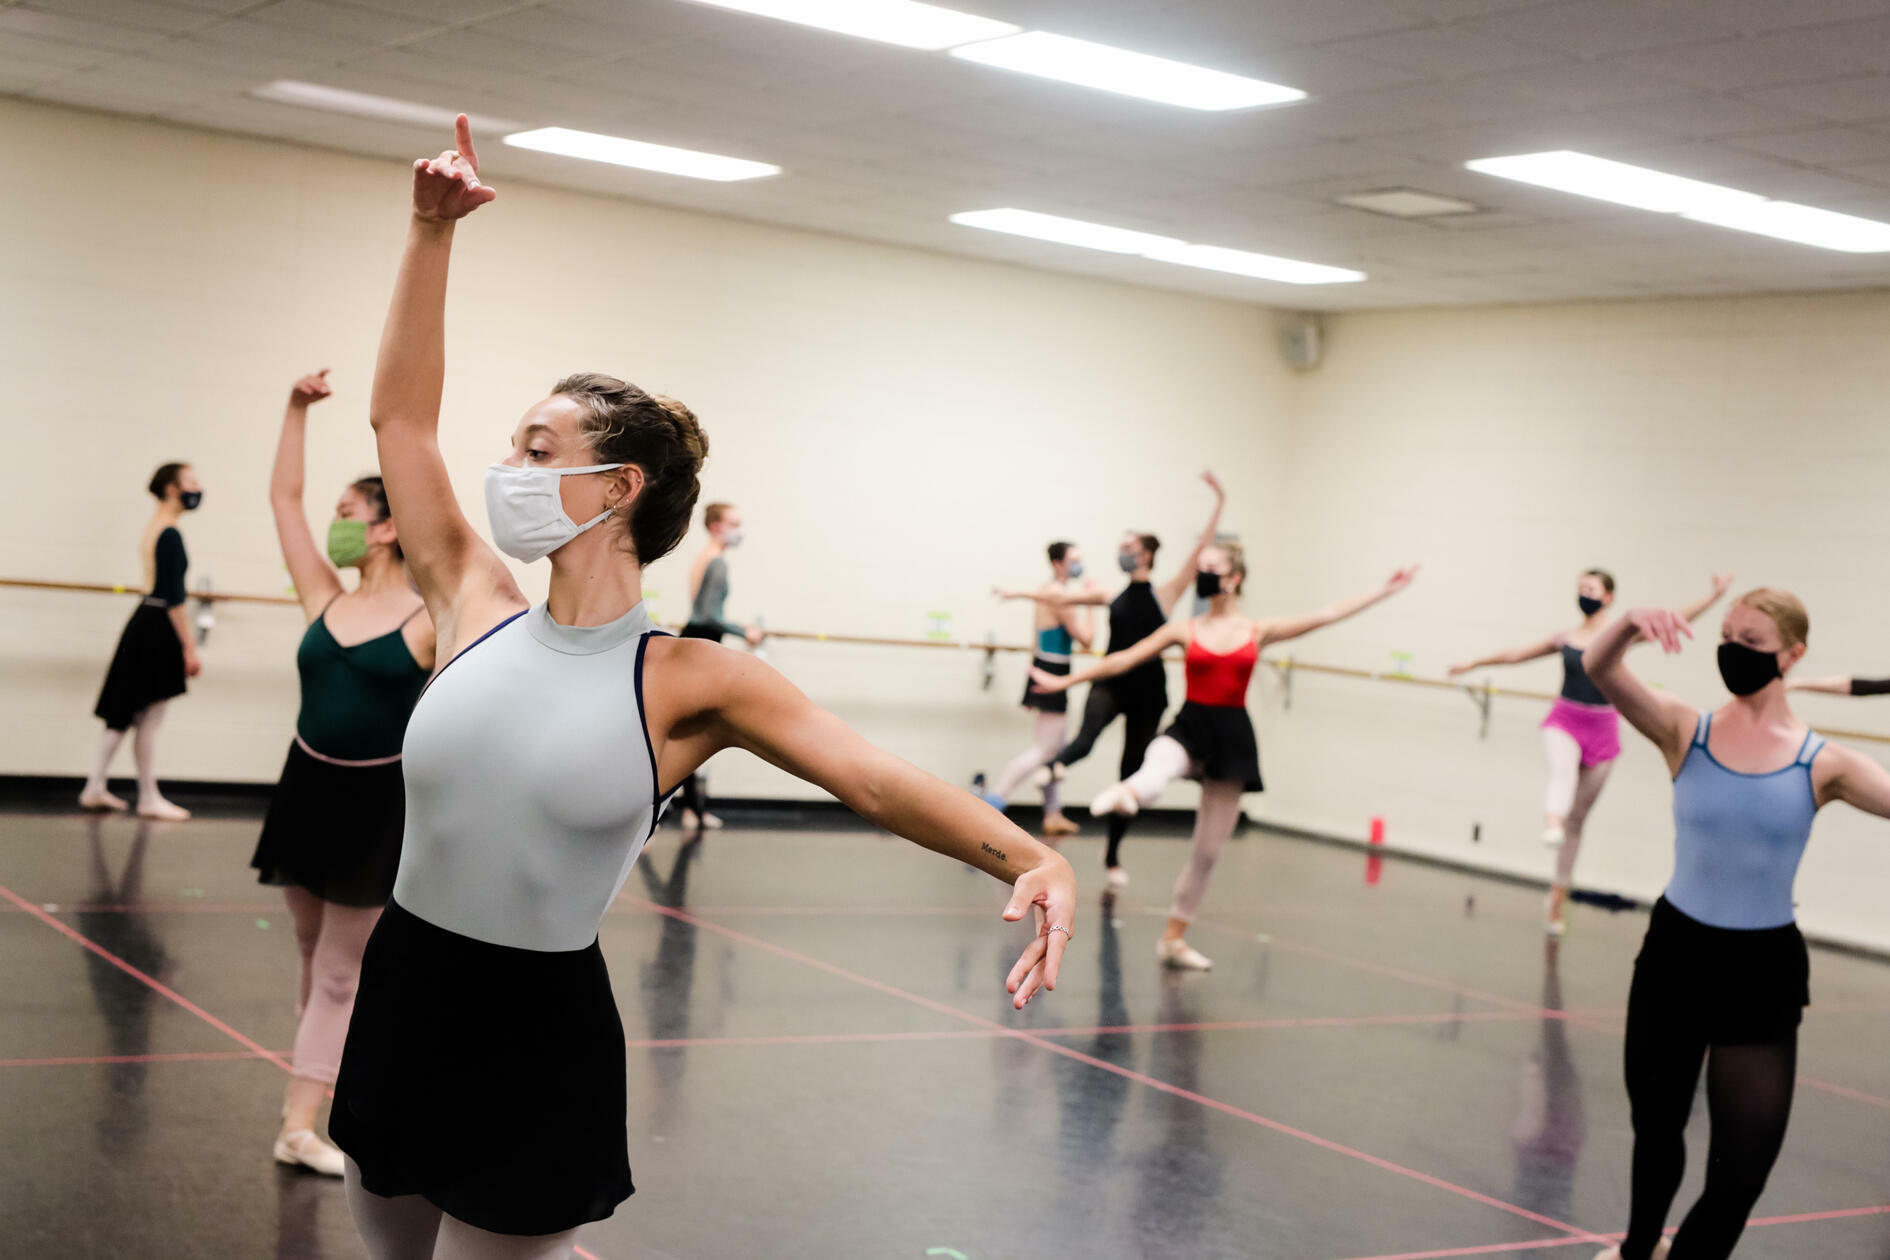 Dancers in a practice room